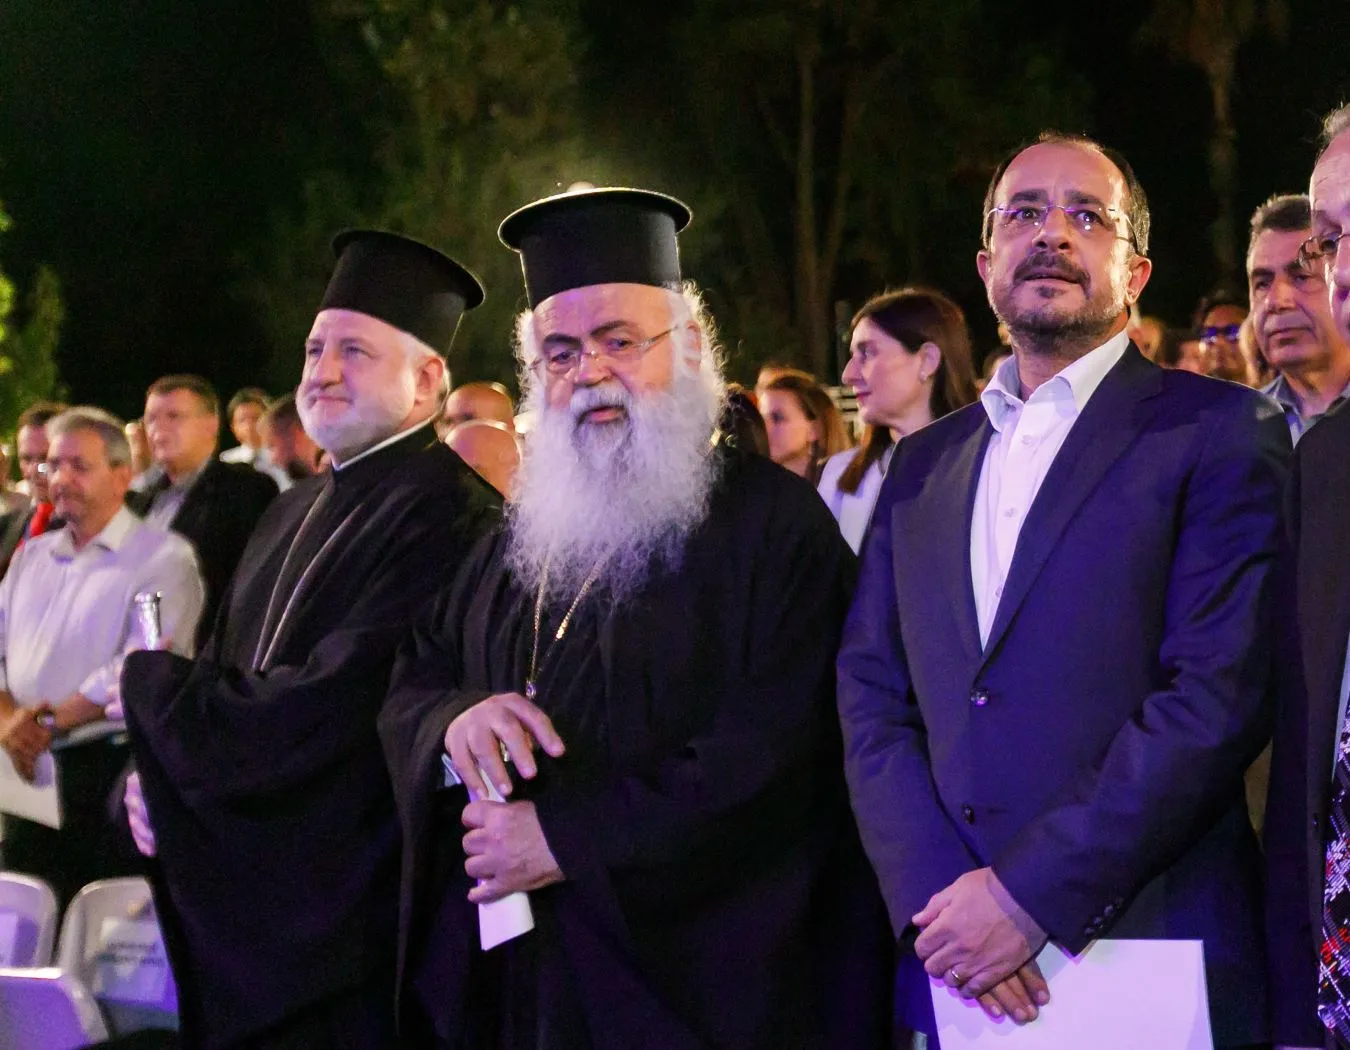 Μ. ΙΓΝΑΤΙΟΥ: Άβυσσος η ψυχή του Προέδρου της Κύπρου και του Αρχιεπίσκοπου Γεώργιου: Δεν γνώριζαν; Η Ομογένεια χρειάζεται ένα φλογερό Ιεράρχη που θα παλεύει για τα εθνικά θέματα…